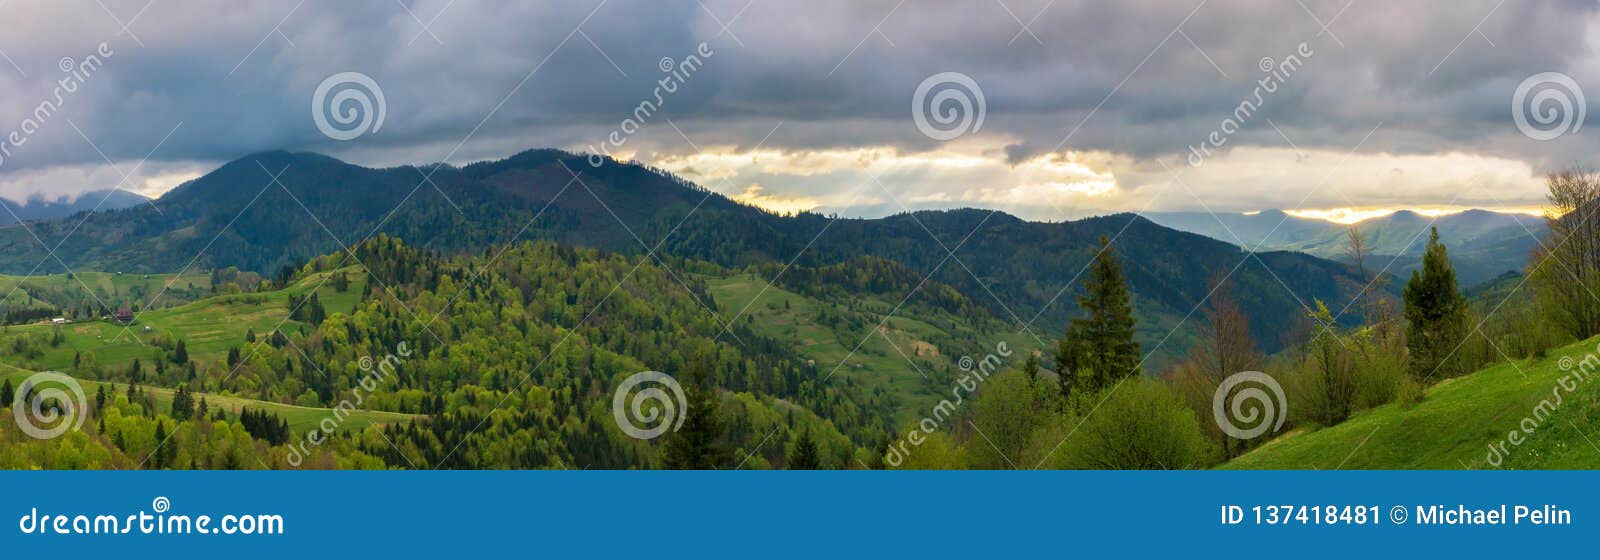 Красивая панорама гористой сельской местности чудесный ландшафт весеннего времени заросший лесом Rolling Hills небо overcast с лучами солнца в расстоянии